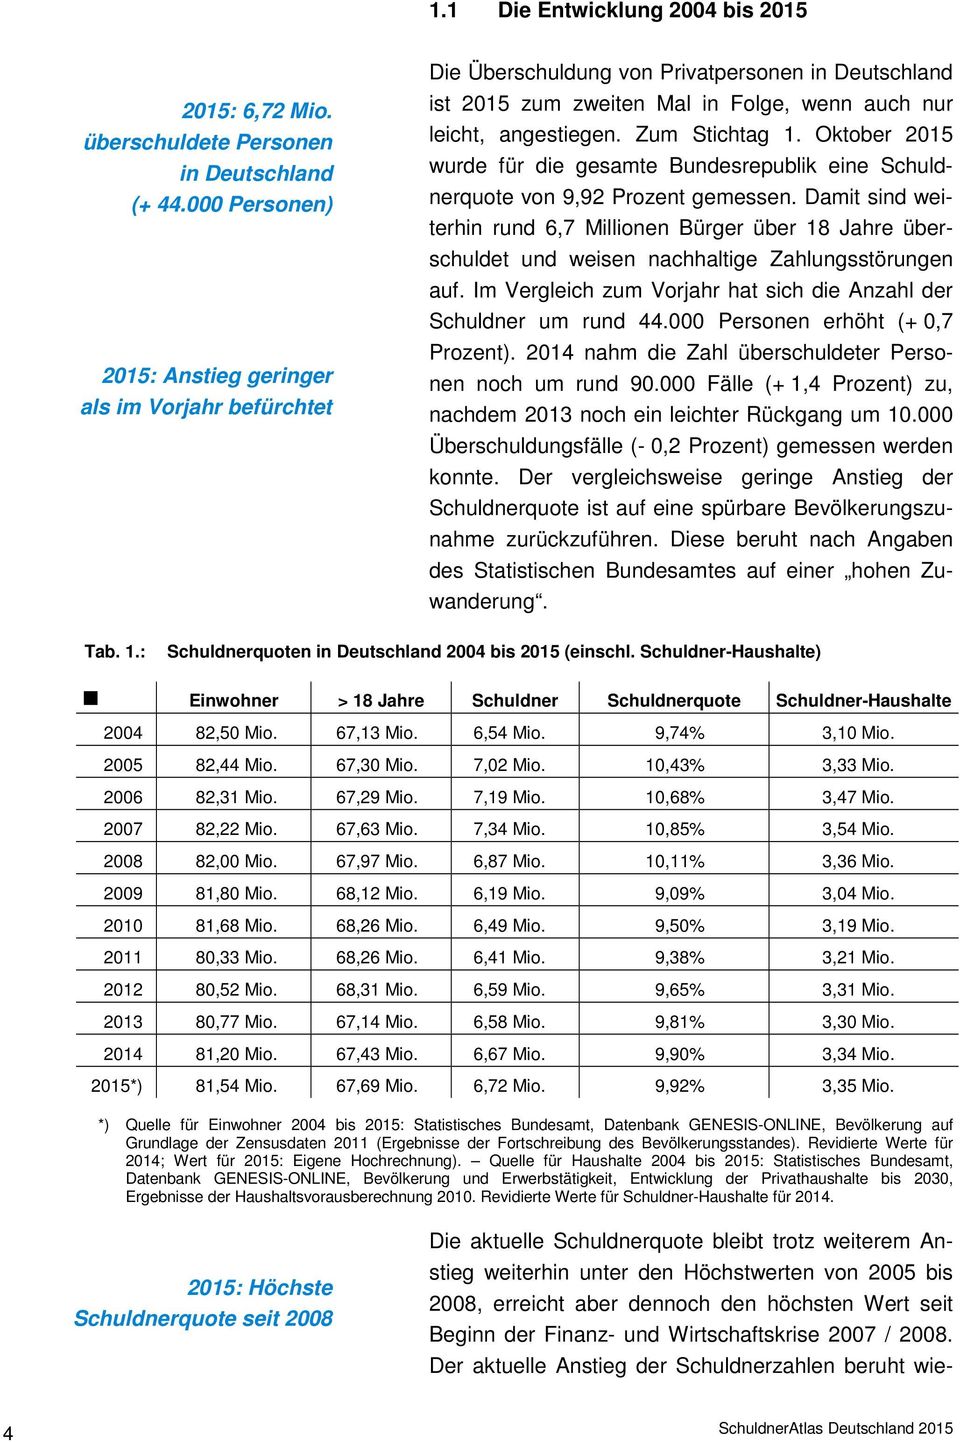 Oktober 2015 wurde für die gesamte Bundesrepublik eine Schuldnerquote von 9,92 Prozent gemessen.